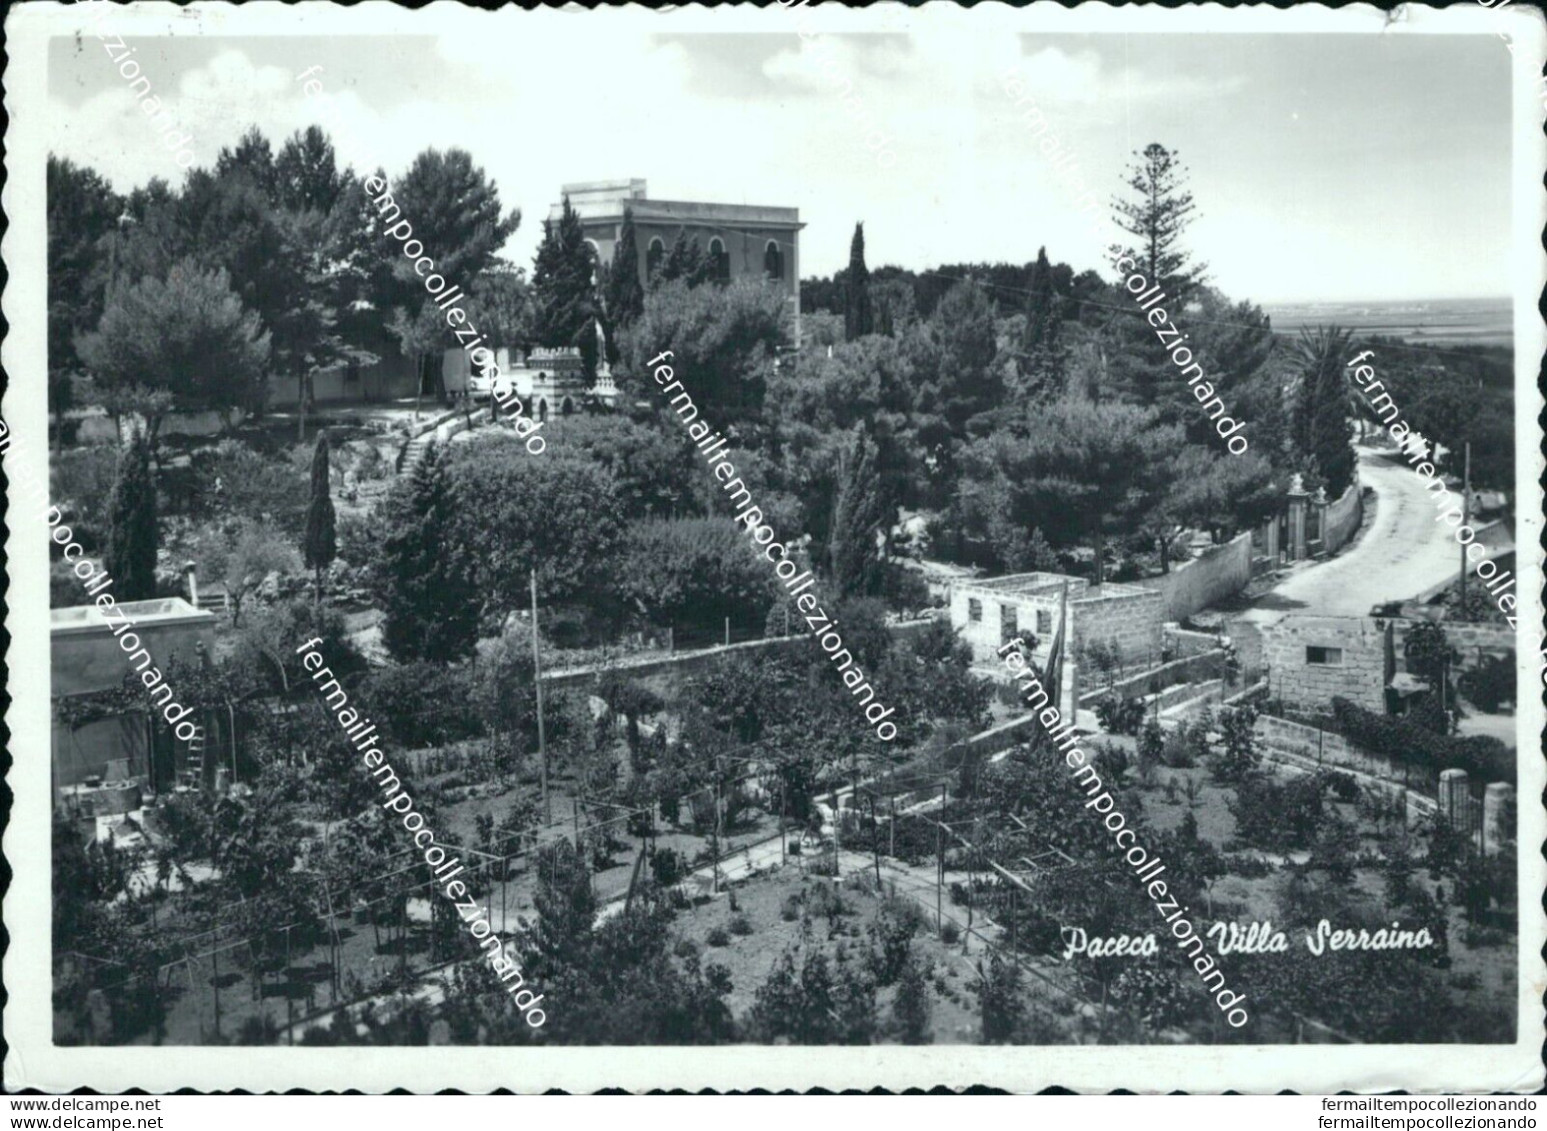 Bm601 Cartolina Paceco Villa Serraino Provincia Di Trapani - Trapani